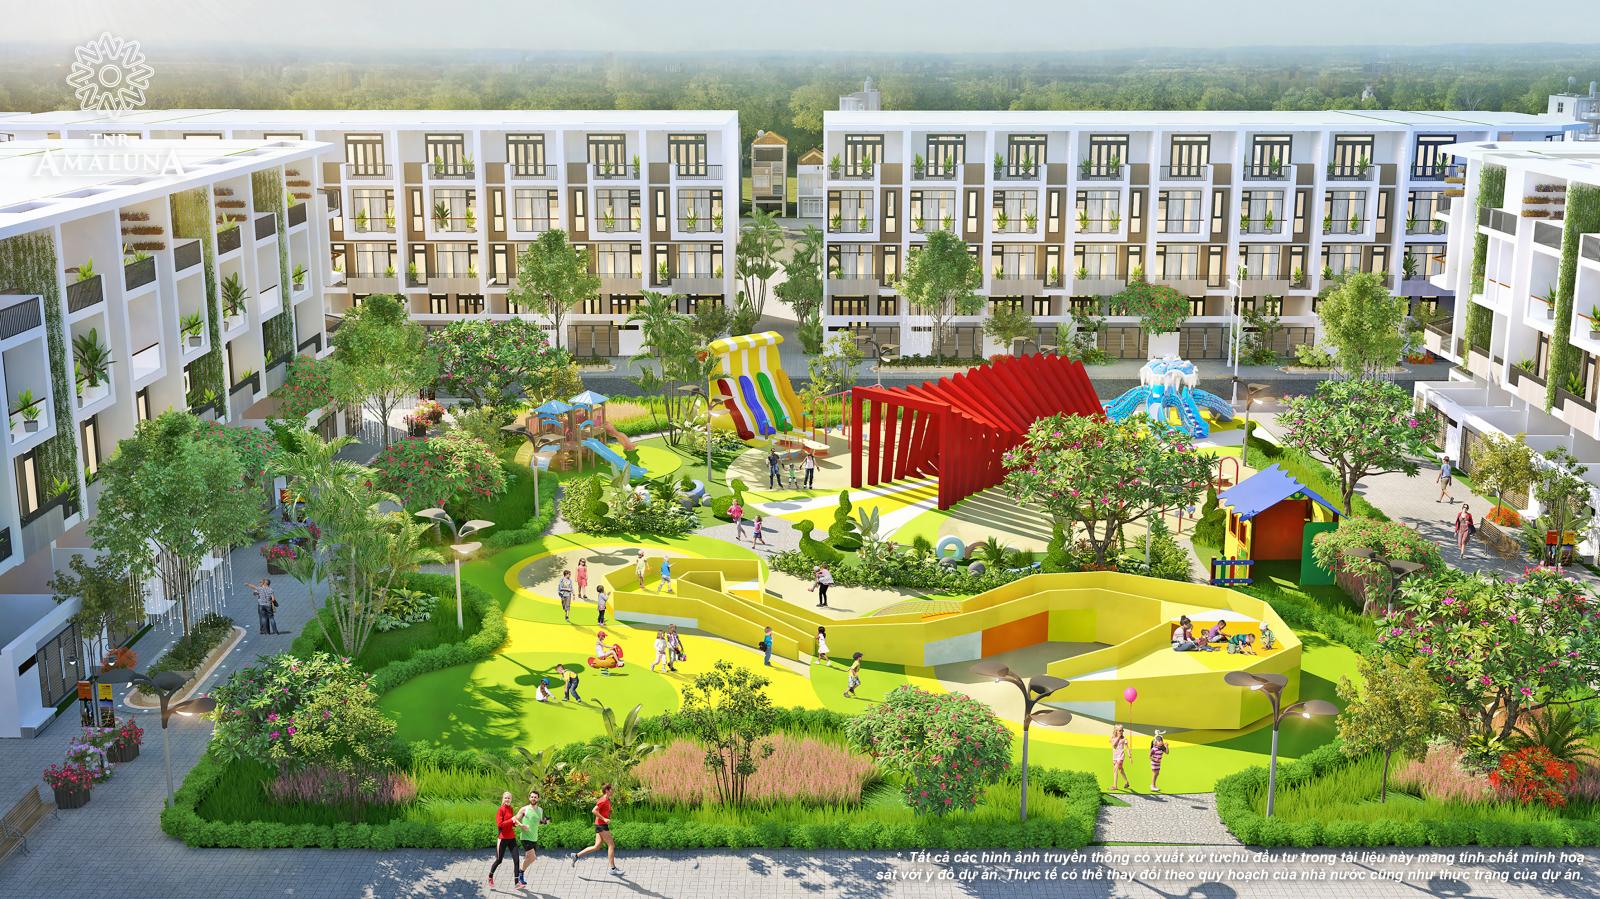 Khu công viên Crystal Children Park đã được chủ đầu TNR Holdings Việt nam chú trọng đầu tư với mong muốn kiến tạo nên những nụ cười trẻ thơ